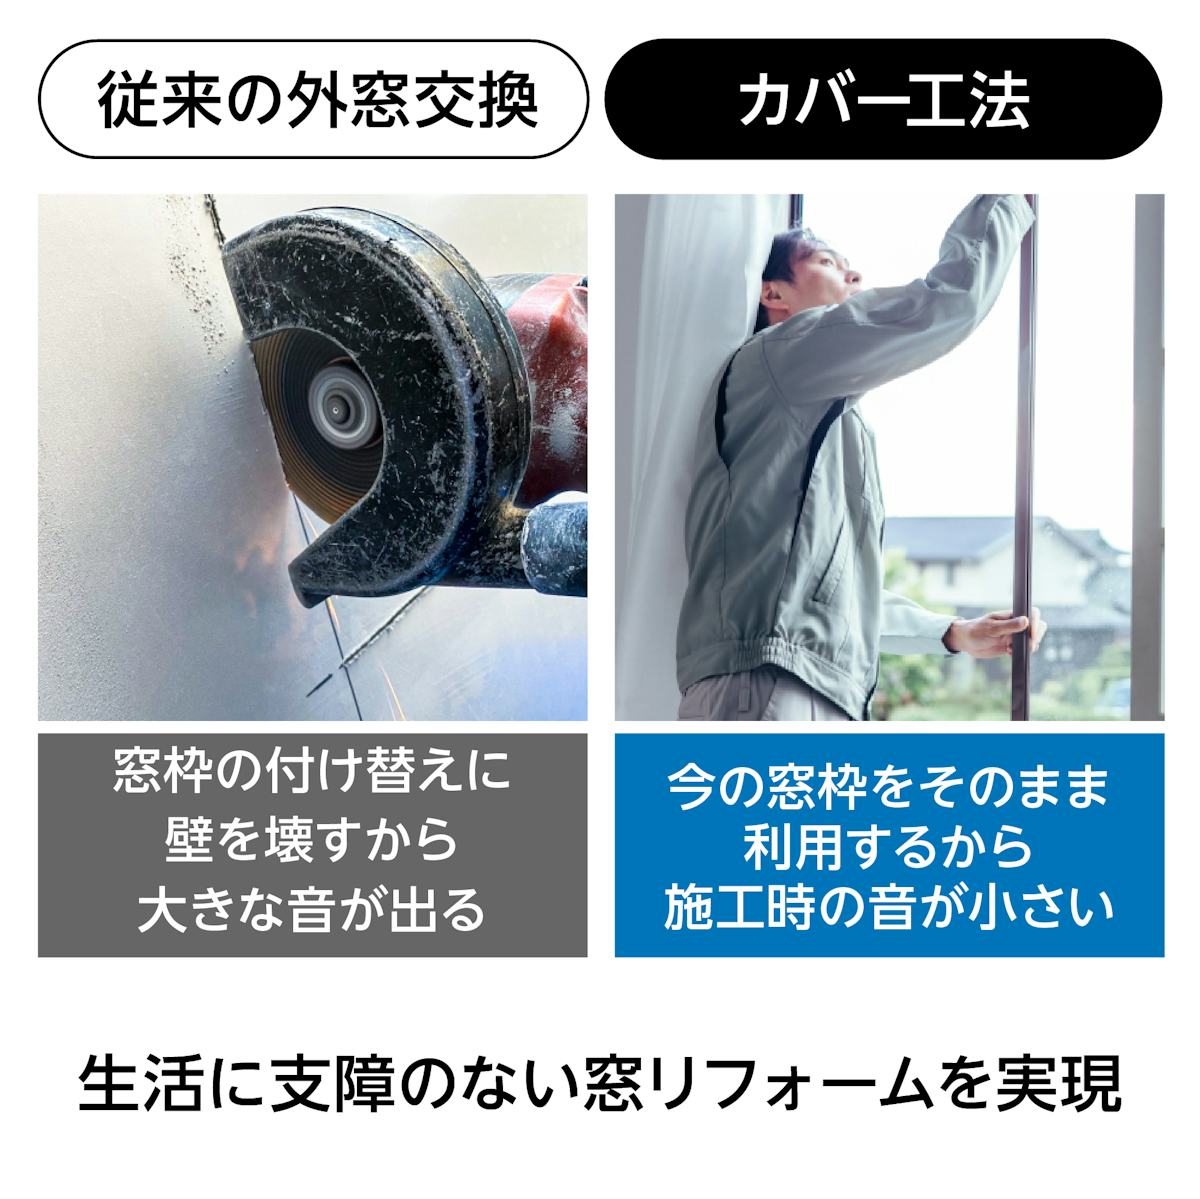 窓サッシのカバー工法 - 騒音も大幅削減